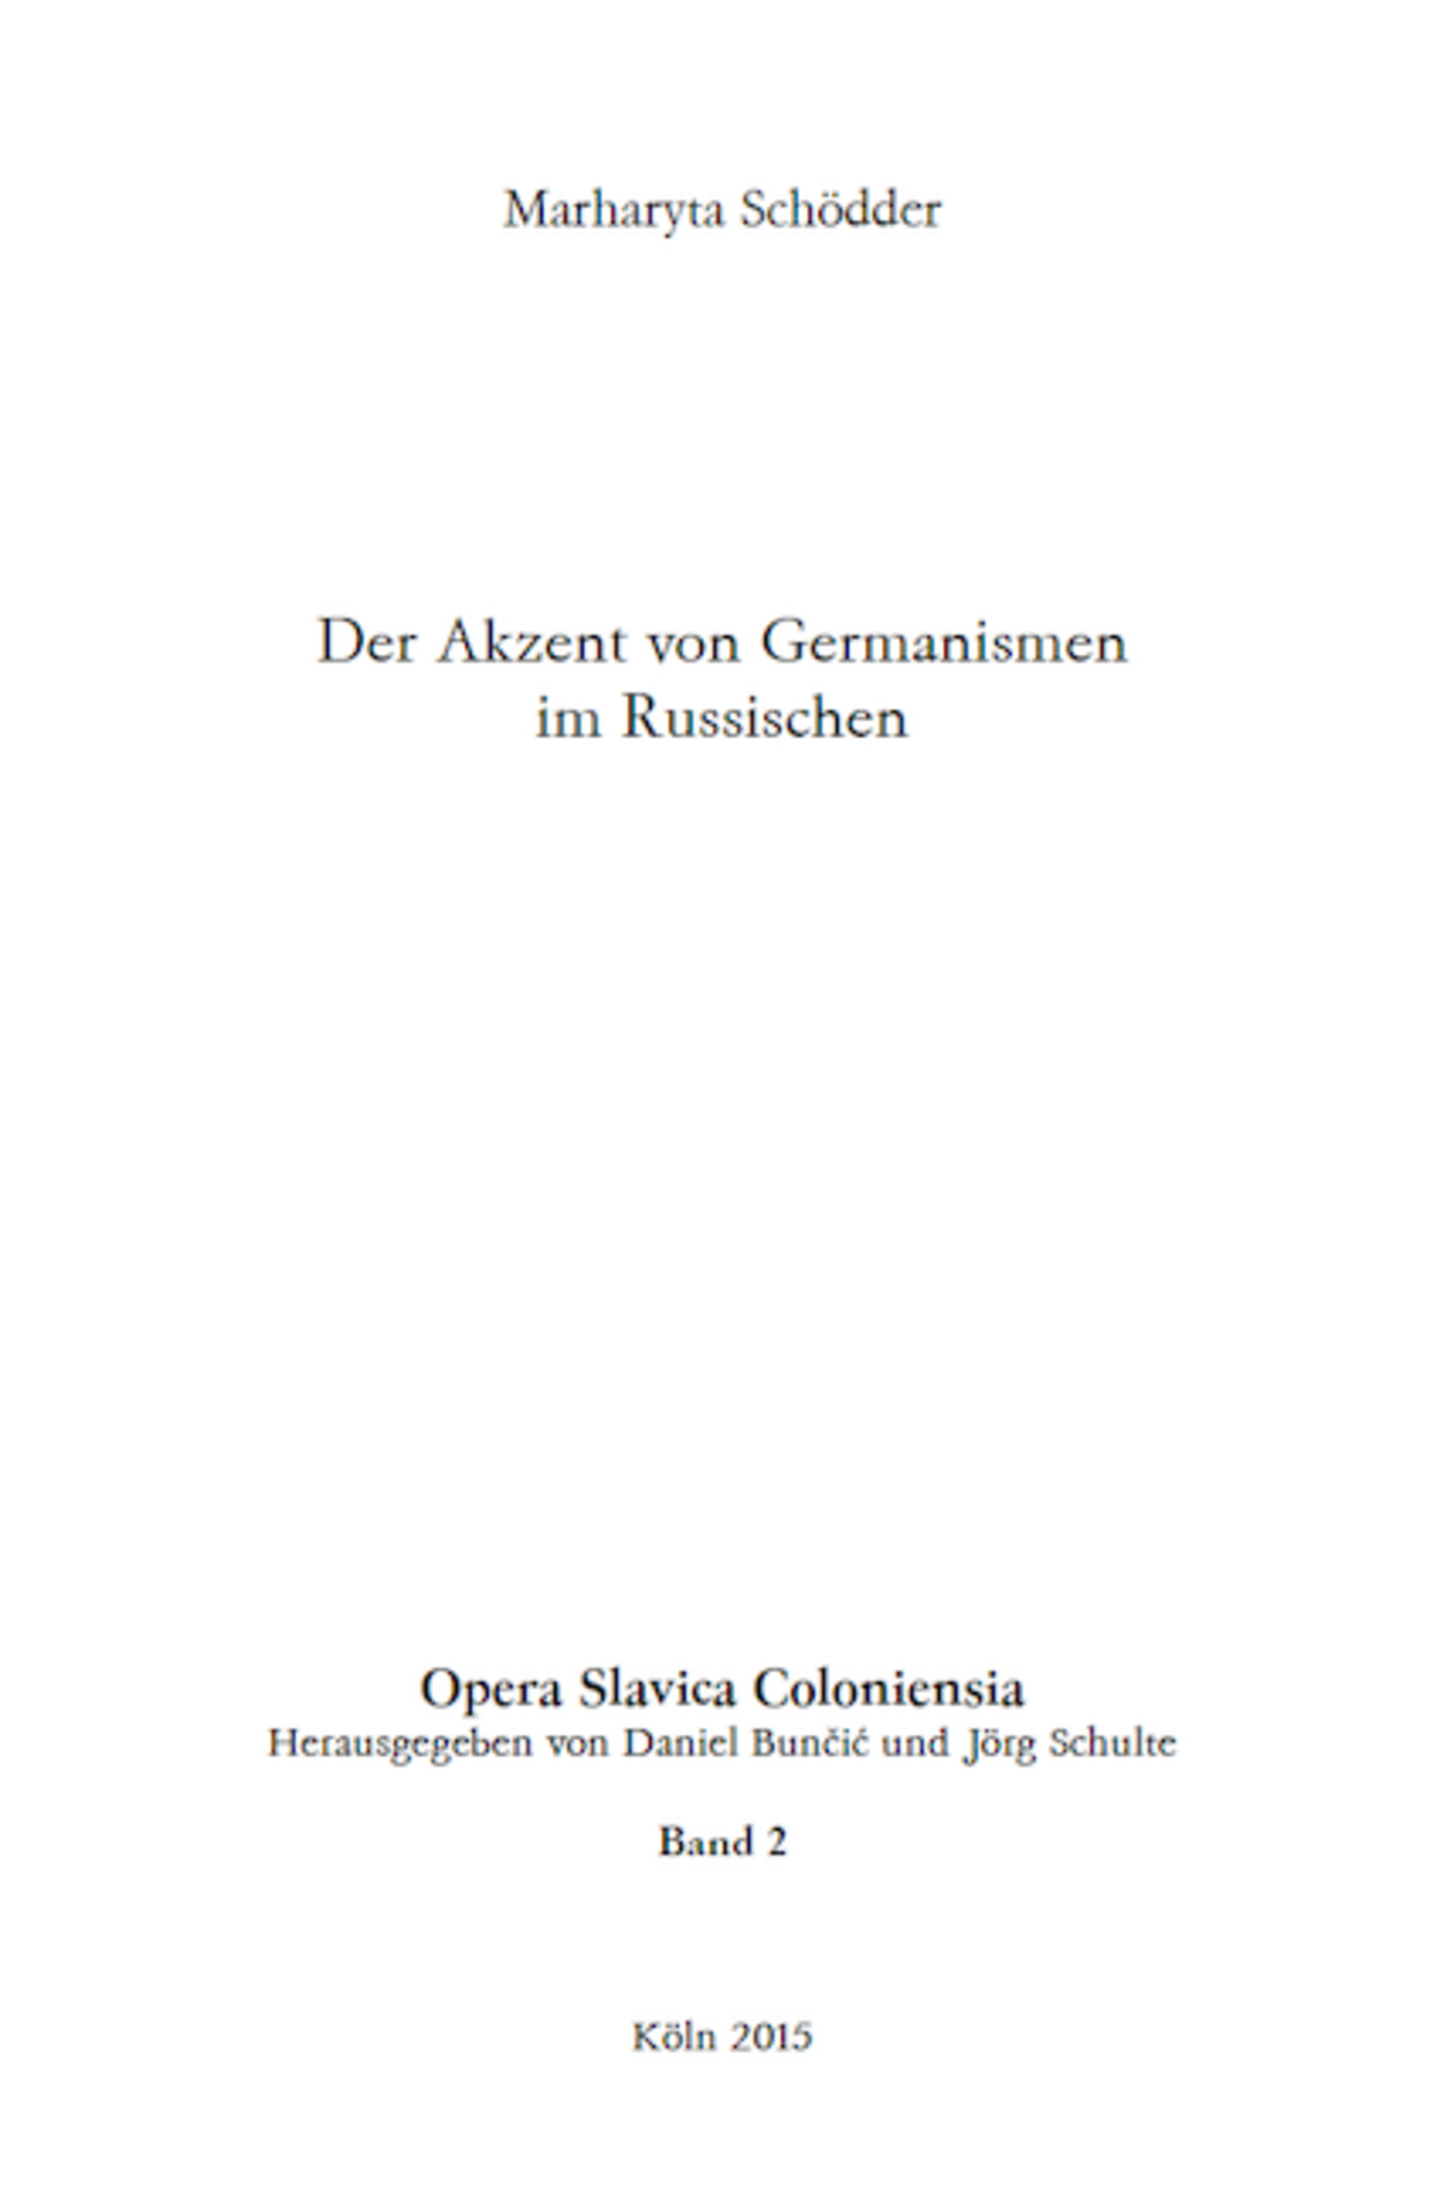 Opera Slavica Coloniensia, Bd. 2: Marharyta Schödder (2015) Der Akzent von Germanismen im Russischen